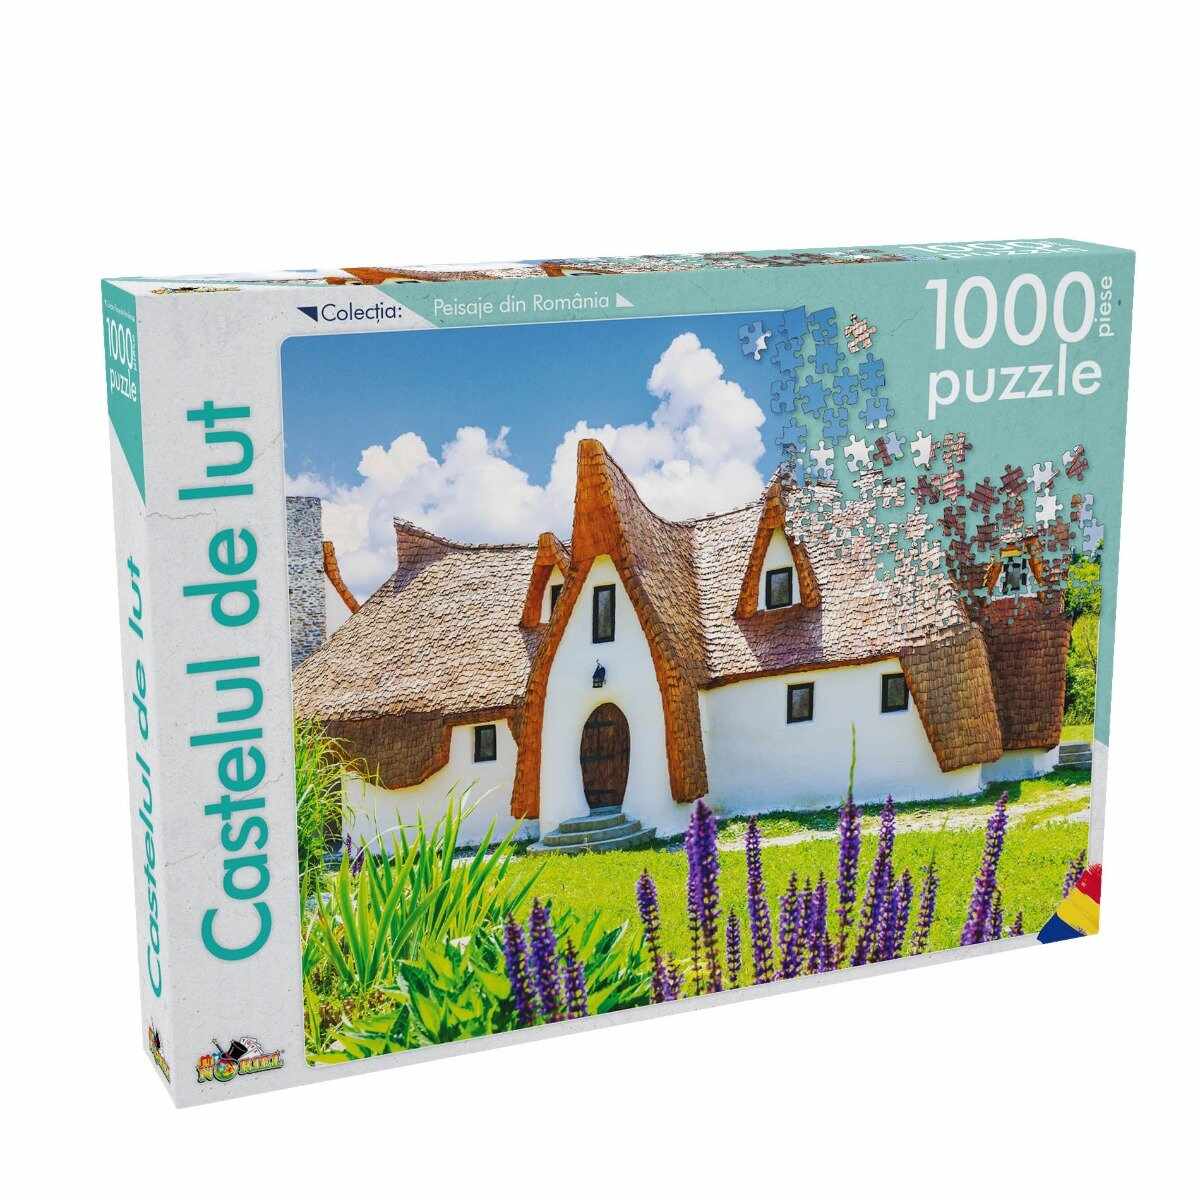 Puzzle Noriel - Peisaje din Romania - Castelul de lut, 1000 piese 